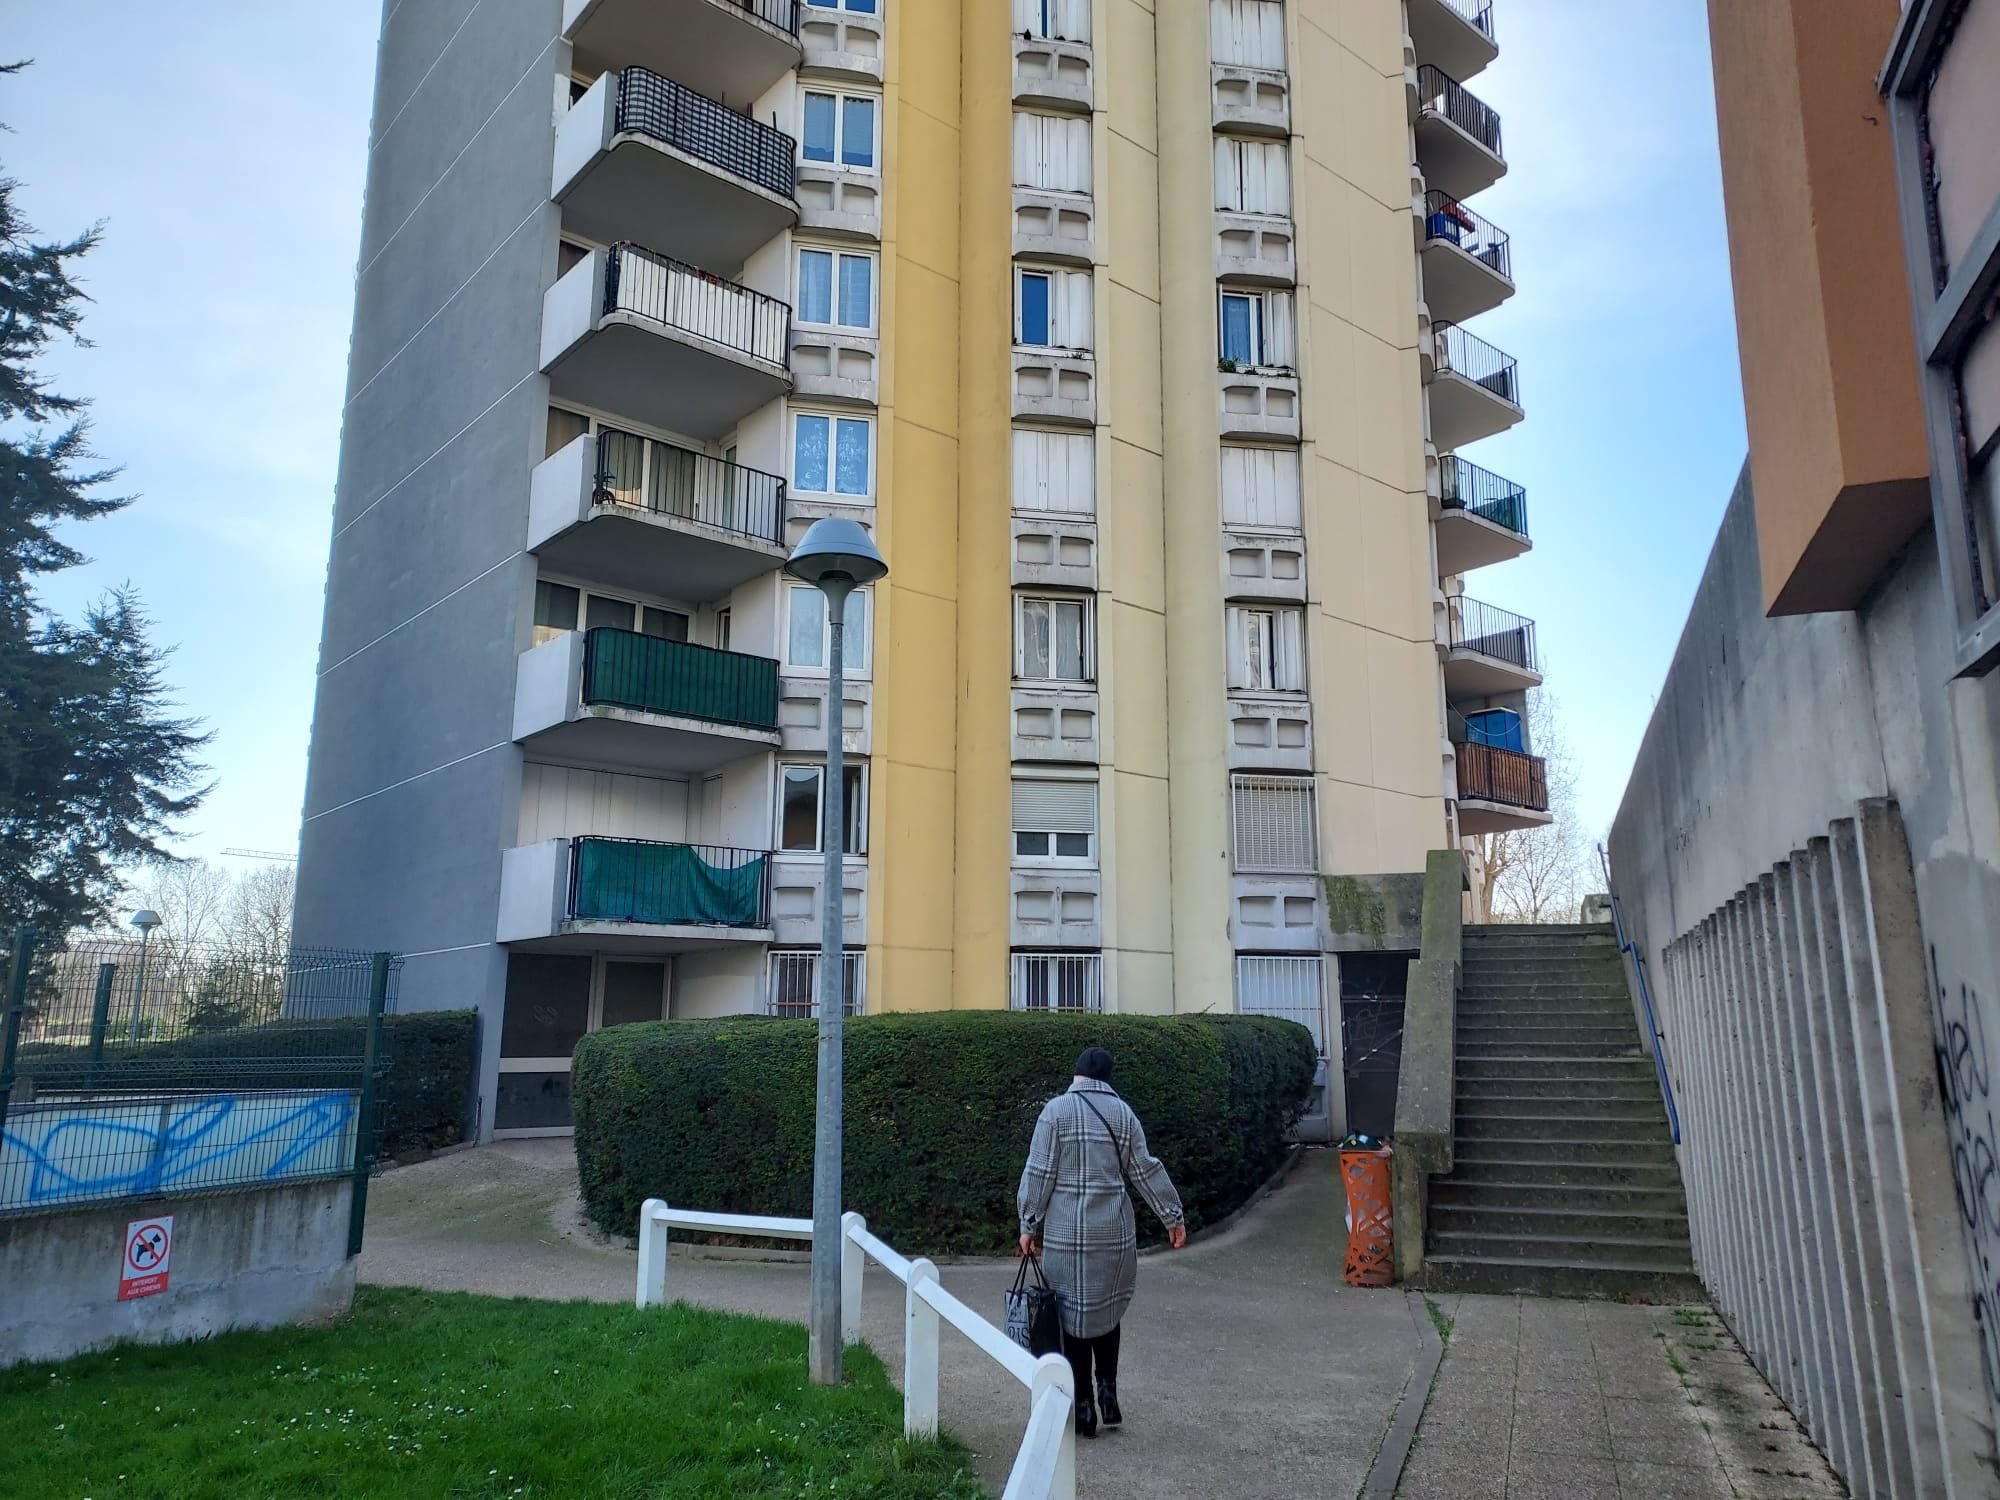 Bobigny (Seine-Saint-Denis), samedi 19 février 2022. C'est rue Hector-Berlioz qu'une famille a été séquestrée dans la nuit de vendredi à samedi.  LP/A.L.